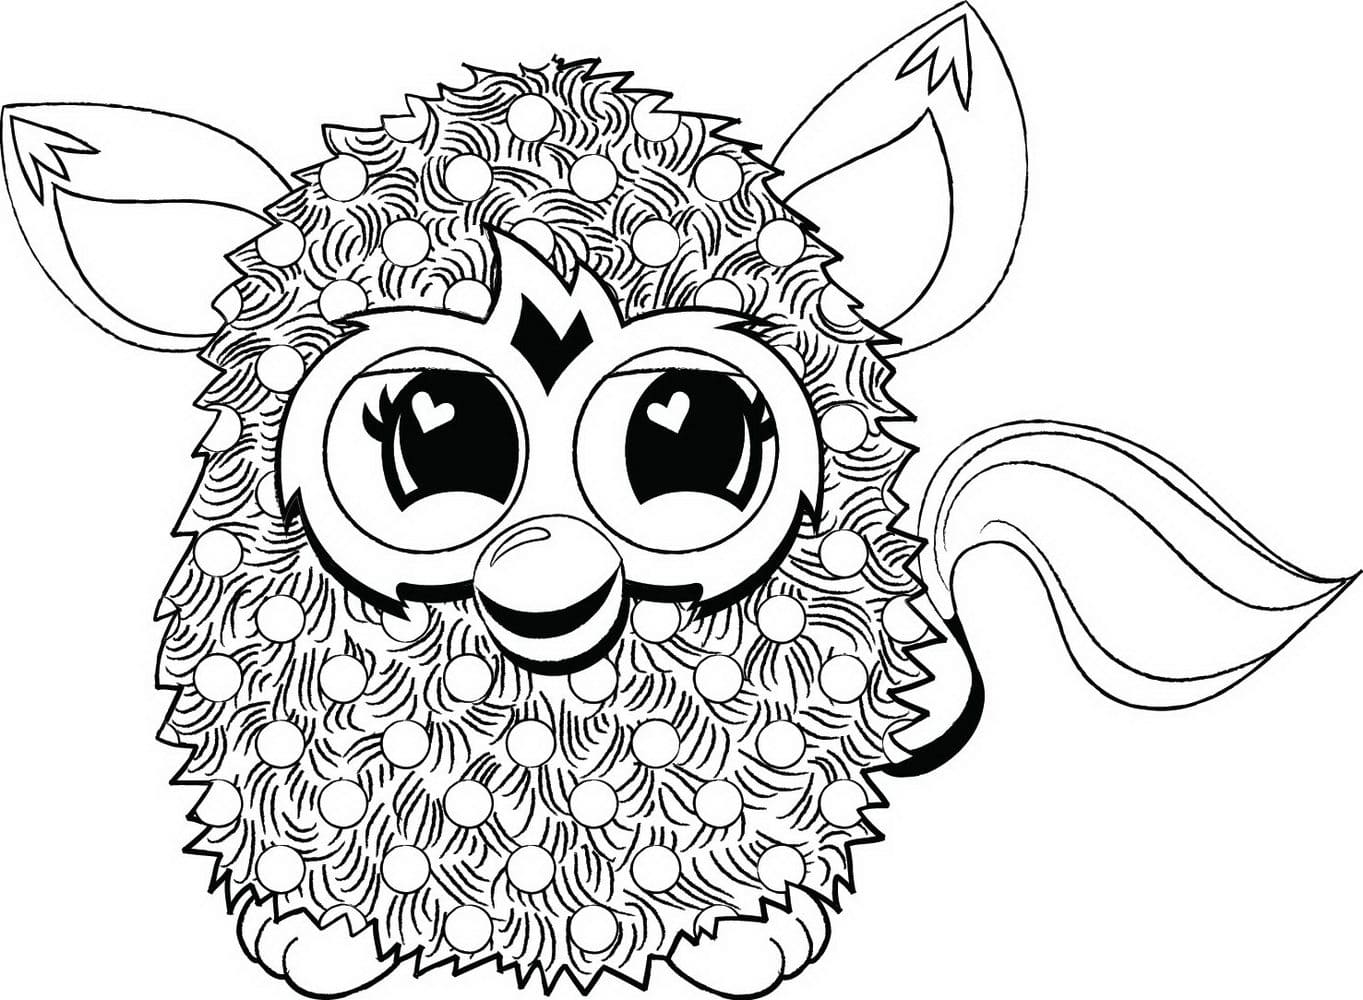 Dibujos para colorear Furby. Imprime animales fantásticos gratis